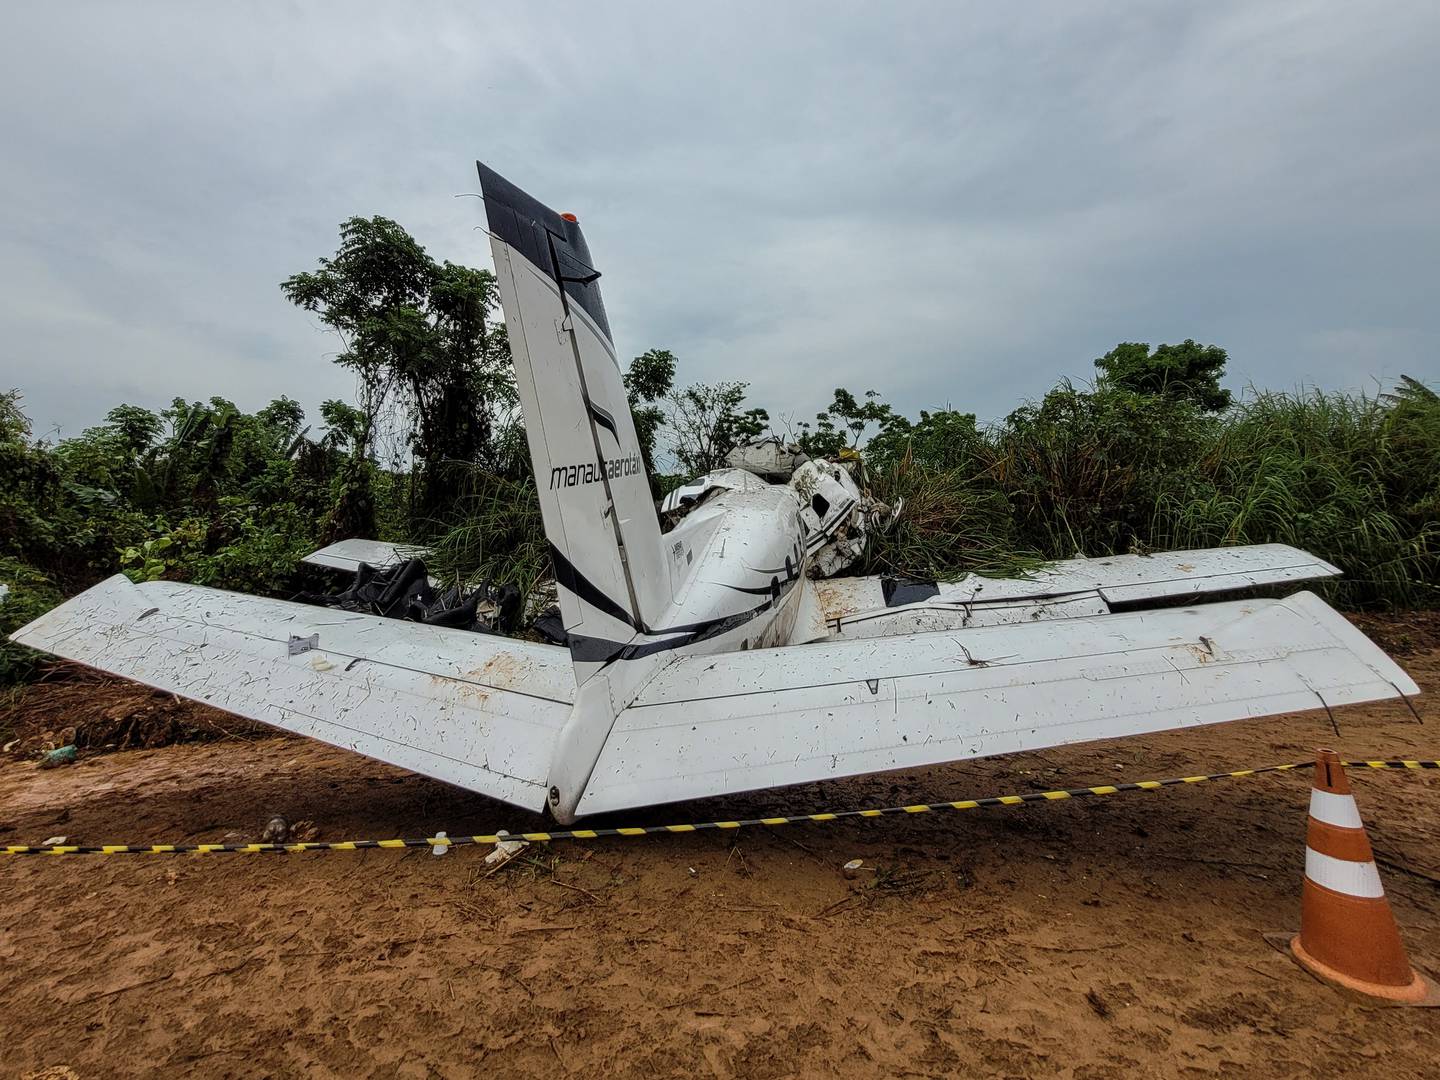 Vista del lugar donde se estrelló un avión Embraer EMB-110 de la aerolínea Manaus Aerotaxi, provocando la muerte de 14 personas durante el aterrizaje del avión el día anterior en el aeropuerto de Barcelos, a unos 400 km de Manaus, estado de Amazonas, Brasil.